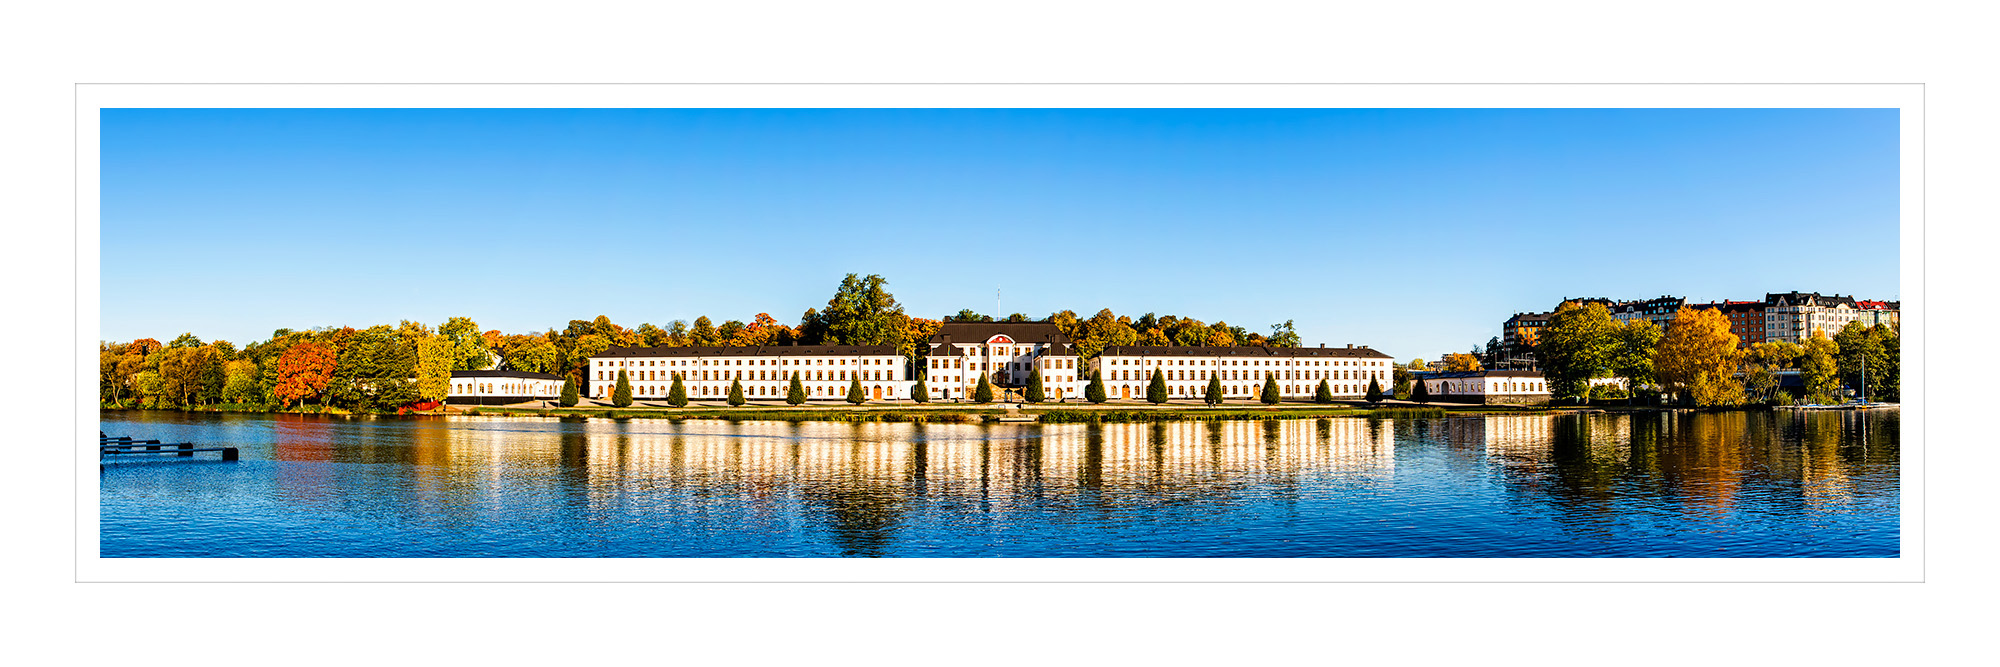 sweden-stockholm-karlberg-palace